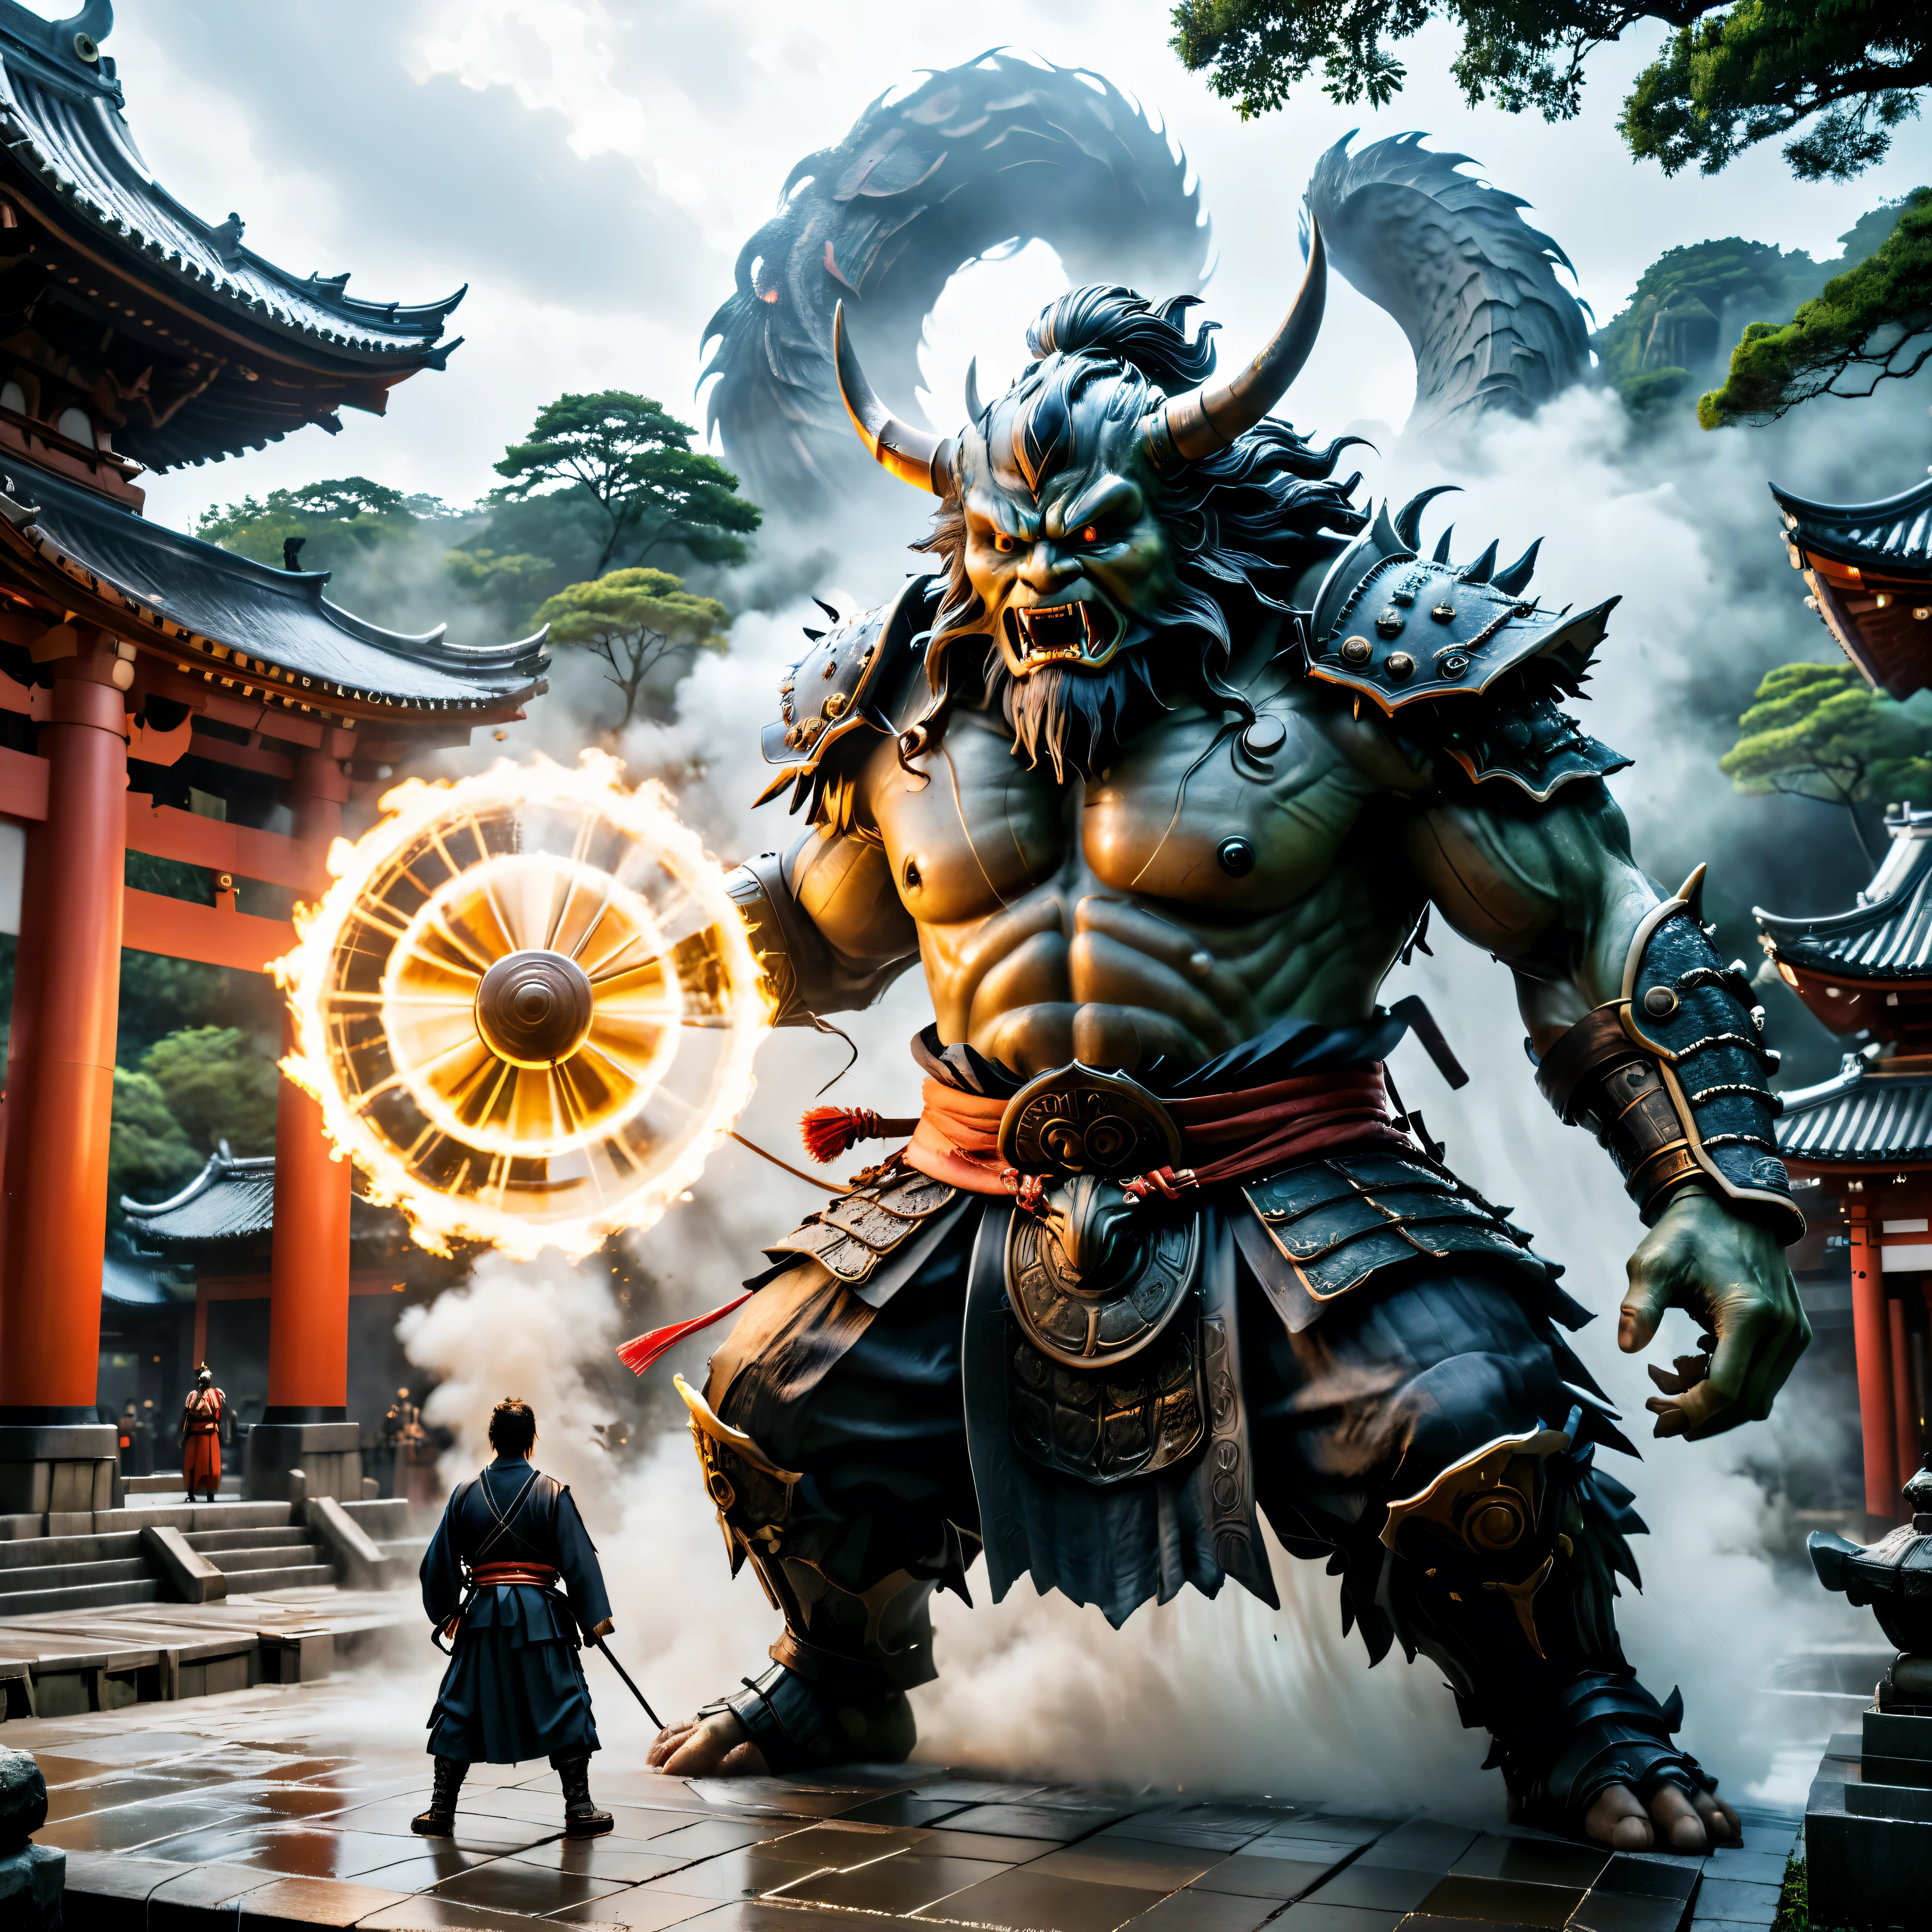 ((Obra-prima em resolução máxima de 16K):1.6),((macio_Cor_fotografia:)1.5), ((ultra-detalhado):1.4),((Imagens estáticas semelhantes a filmes e ângulos dinâmicos):1.3),((cena do confronto final):1.1) | (Cinematic photo of a samurai facing a para Yokai monster at a temple), (cinematic lens), (samurai), (para Yokai), (brilhar), (efeito tyndall), (experiência visual), (Realismo), (realista), gráficos premiados, tiro escuro, Grão de filme, extremamente detalhado, arte digital, rtx, motor irreal, conceito de cena efeito anti-reflexo, Tudo capturado com foco nítido.